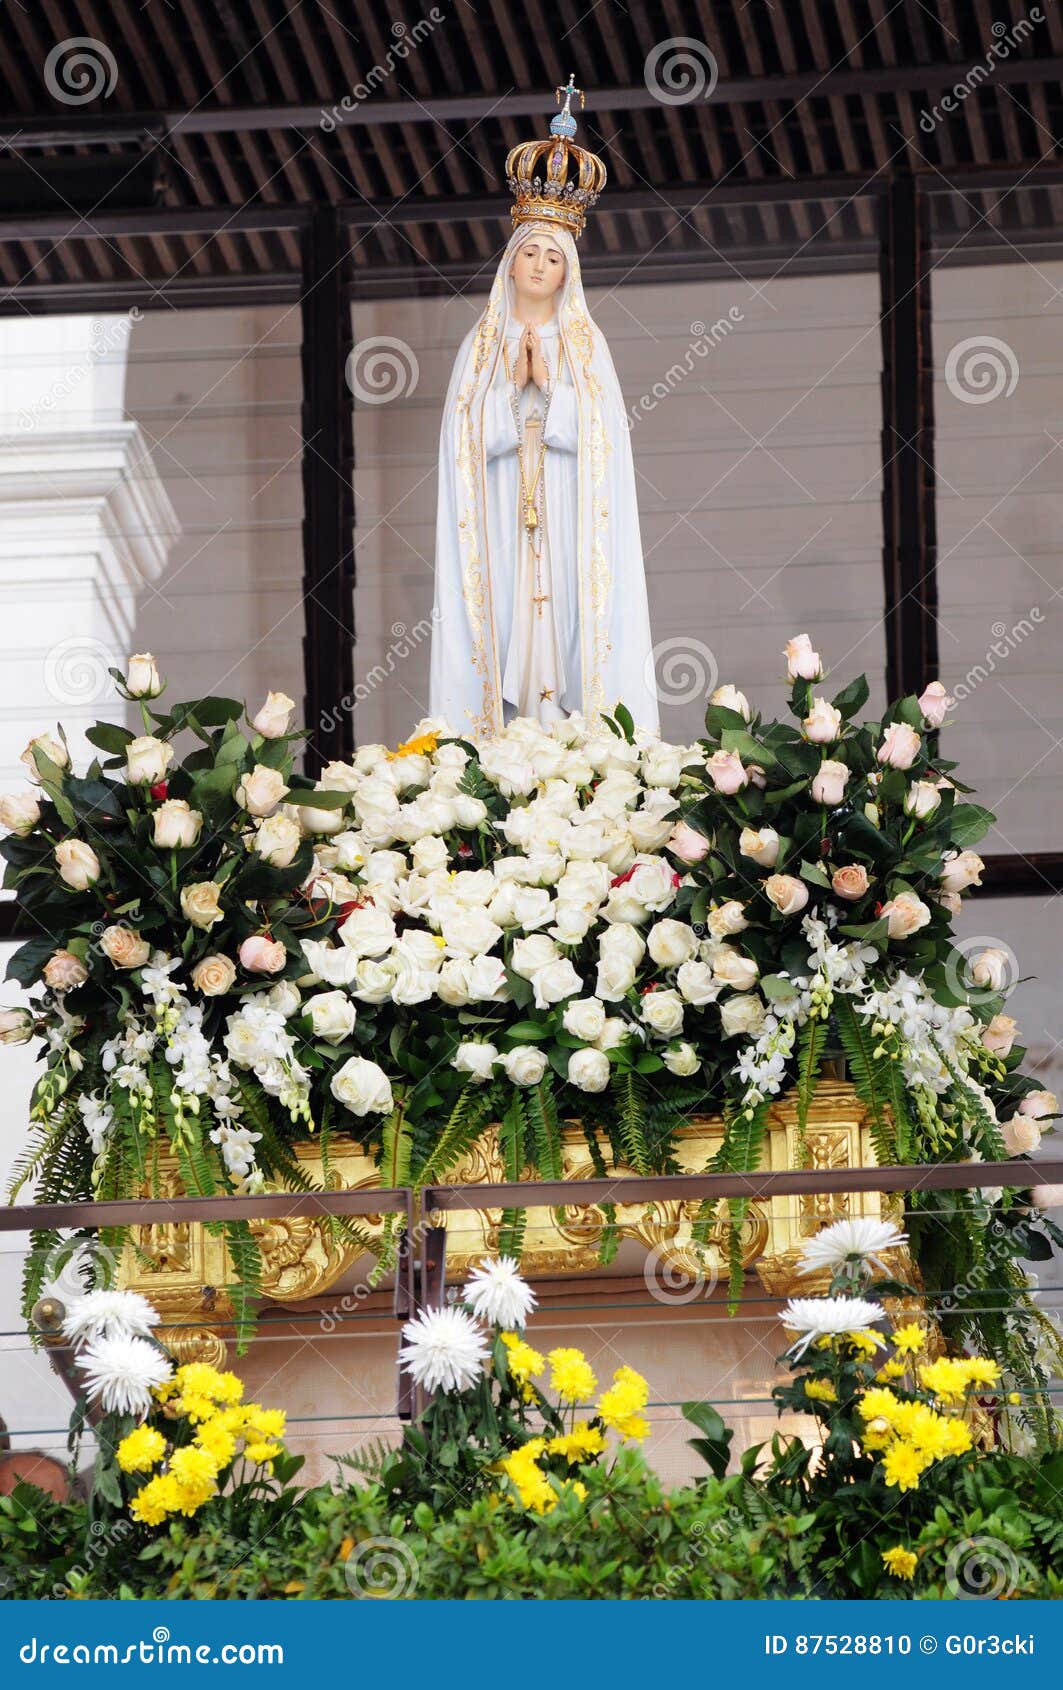 Our Lady of Fatima, Deity Statue, Christian Faith Editorial Image ...